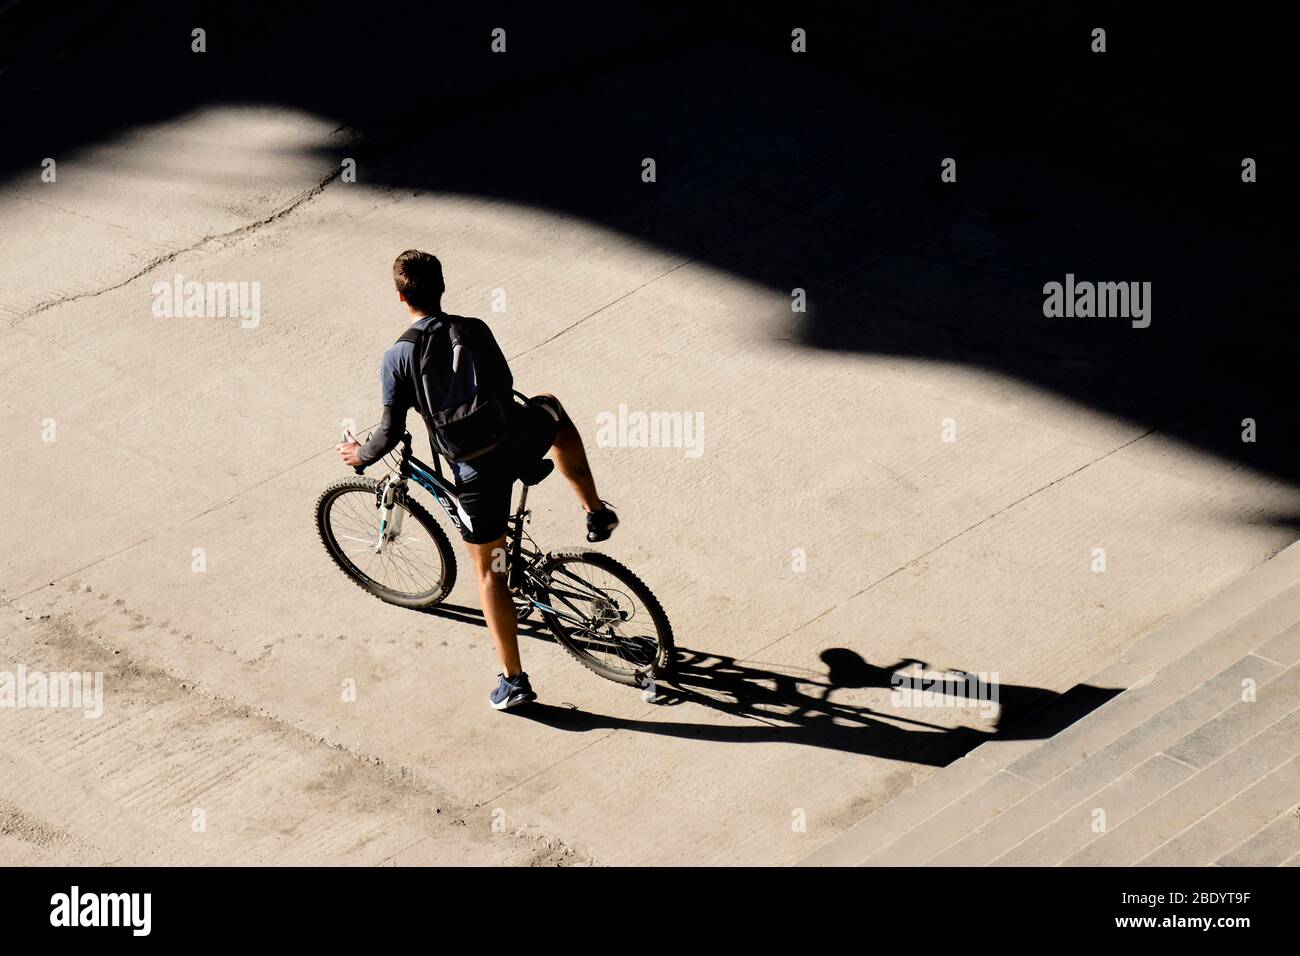 Belgrado, Serbia - 18 marzo 2020: Giovane uomo che si porta in bicicletta sul marciapiede della strada della città di fronte alle scale pubbliche in una giornata di sole, alta angolo di retrvi Foto Stock